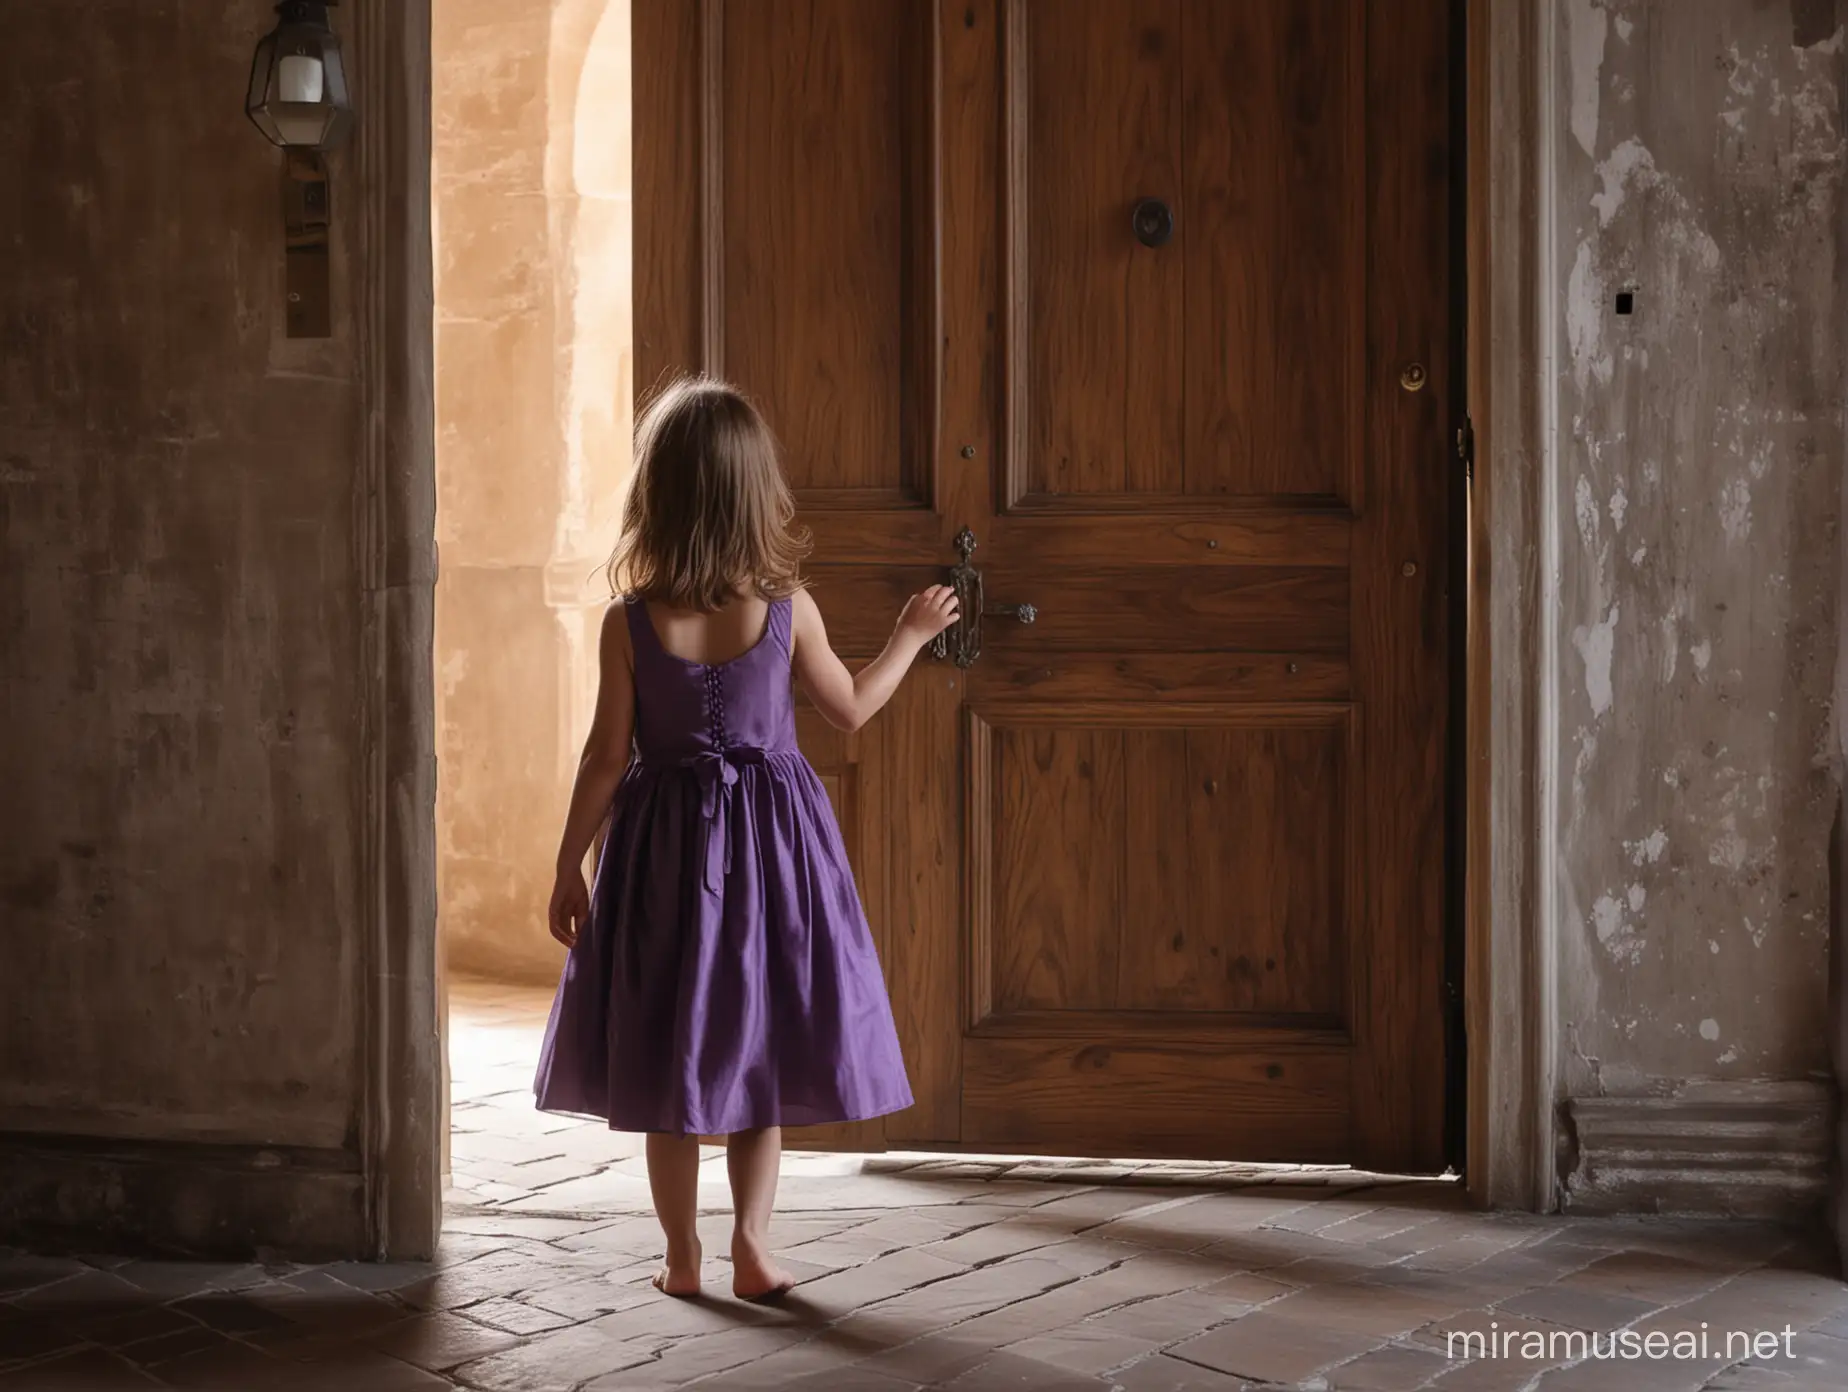 porte en bois intérieure dans un château magnifique ambiance sombre et sublime avec des chandeliers. Devant cette porte, une petite fille toque à la porte. Elle est de dos, a les cheveux chatains, une robe violette sans manches et pieds nus
